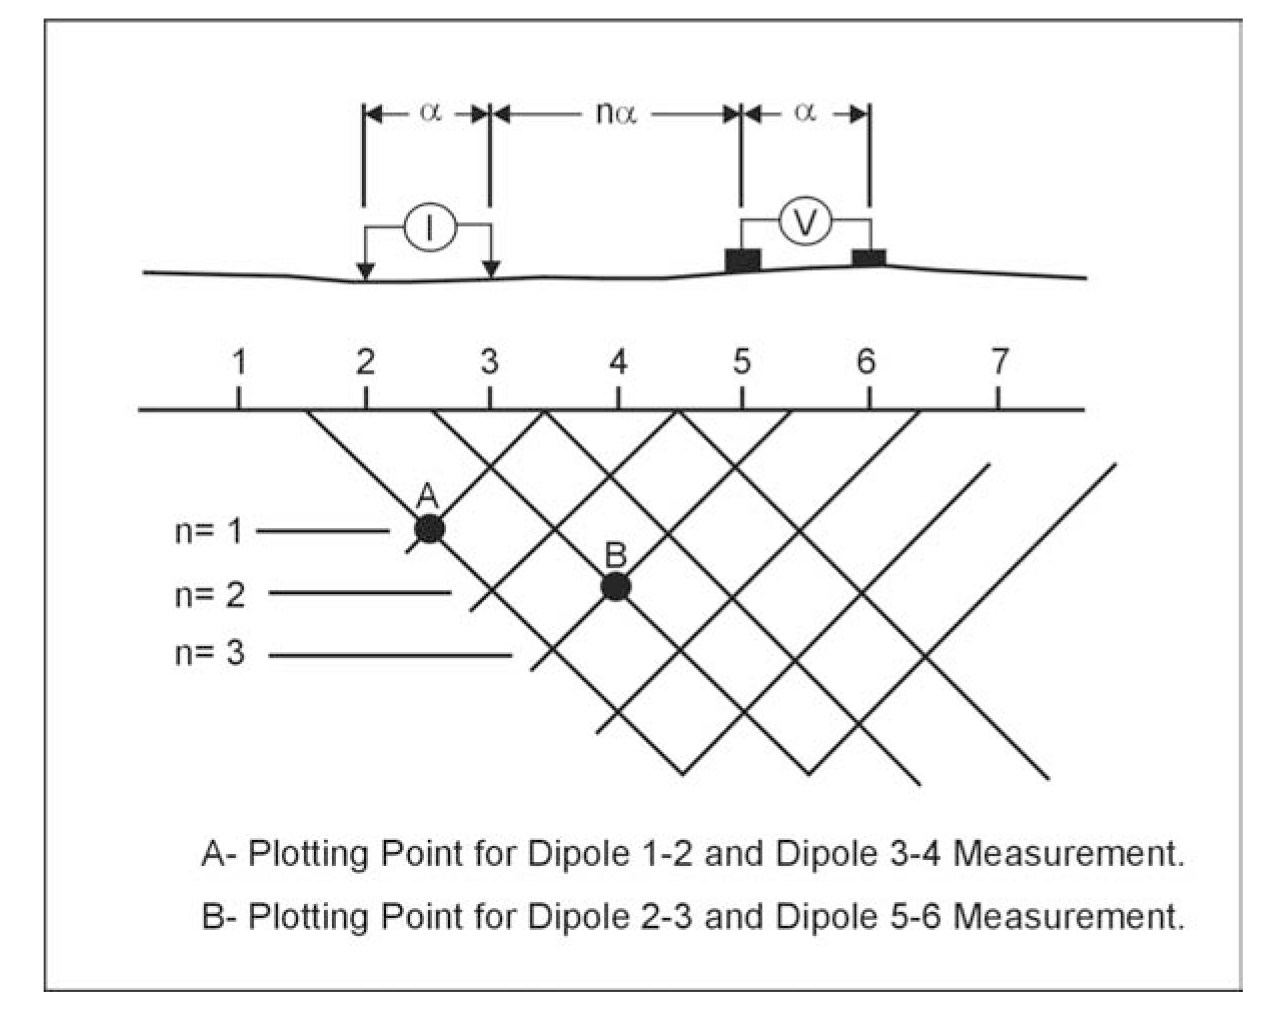 Dipole-dipole plotting method.